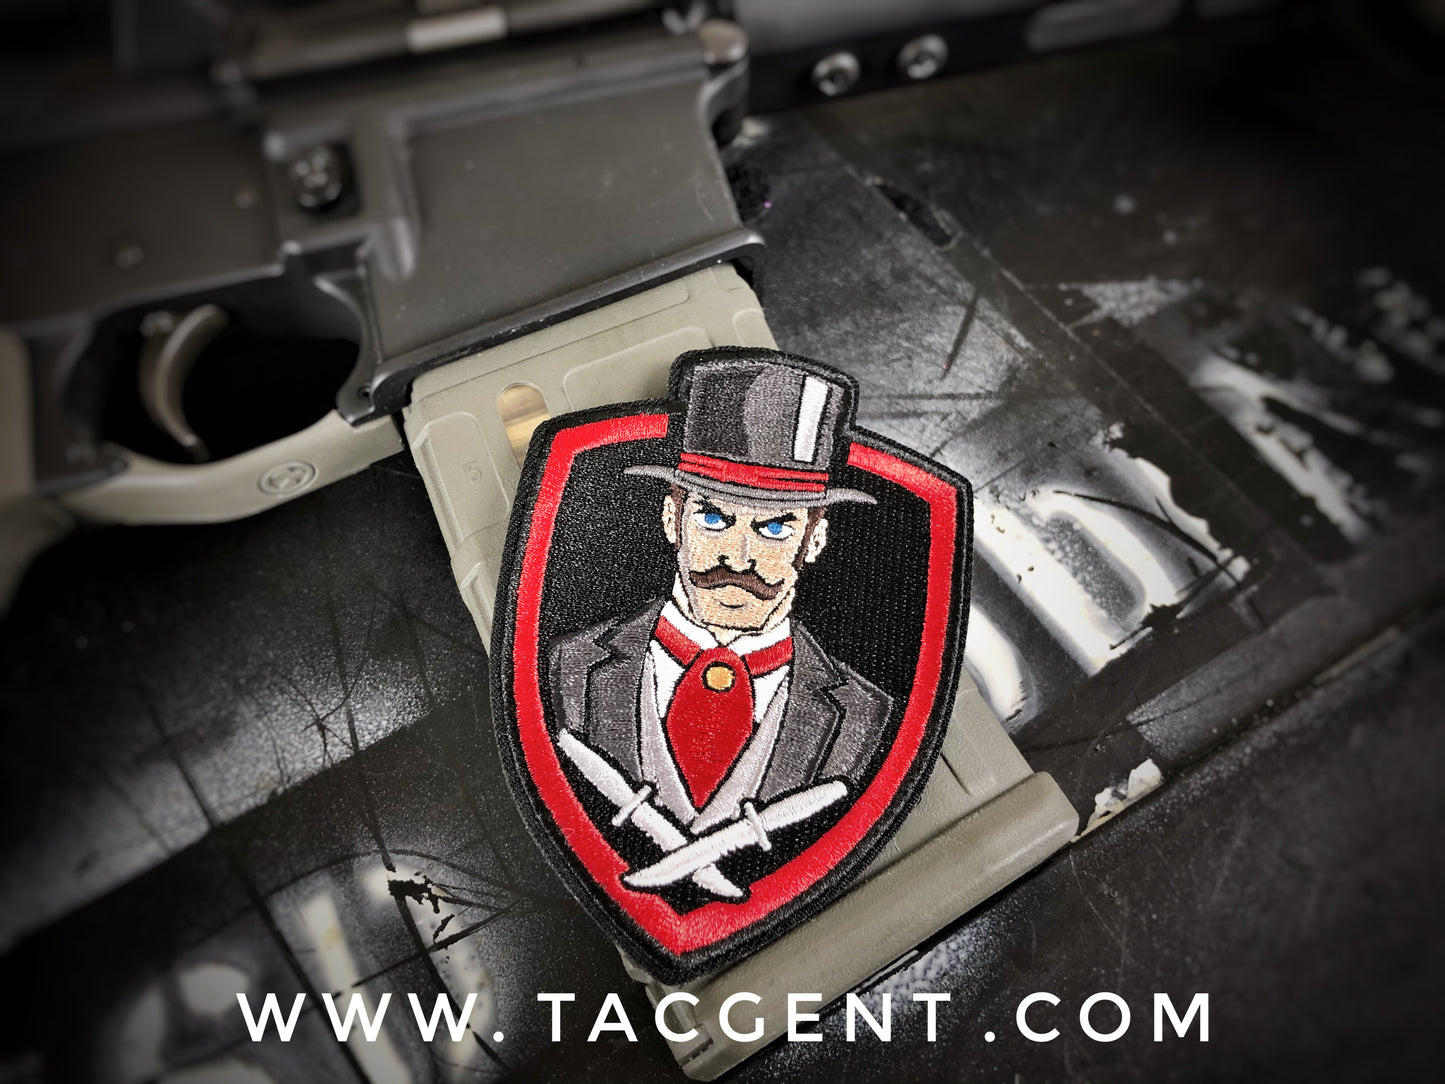 Tactical Gent "OG" Red Edition